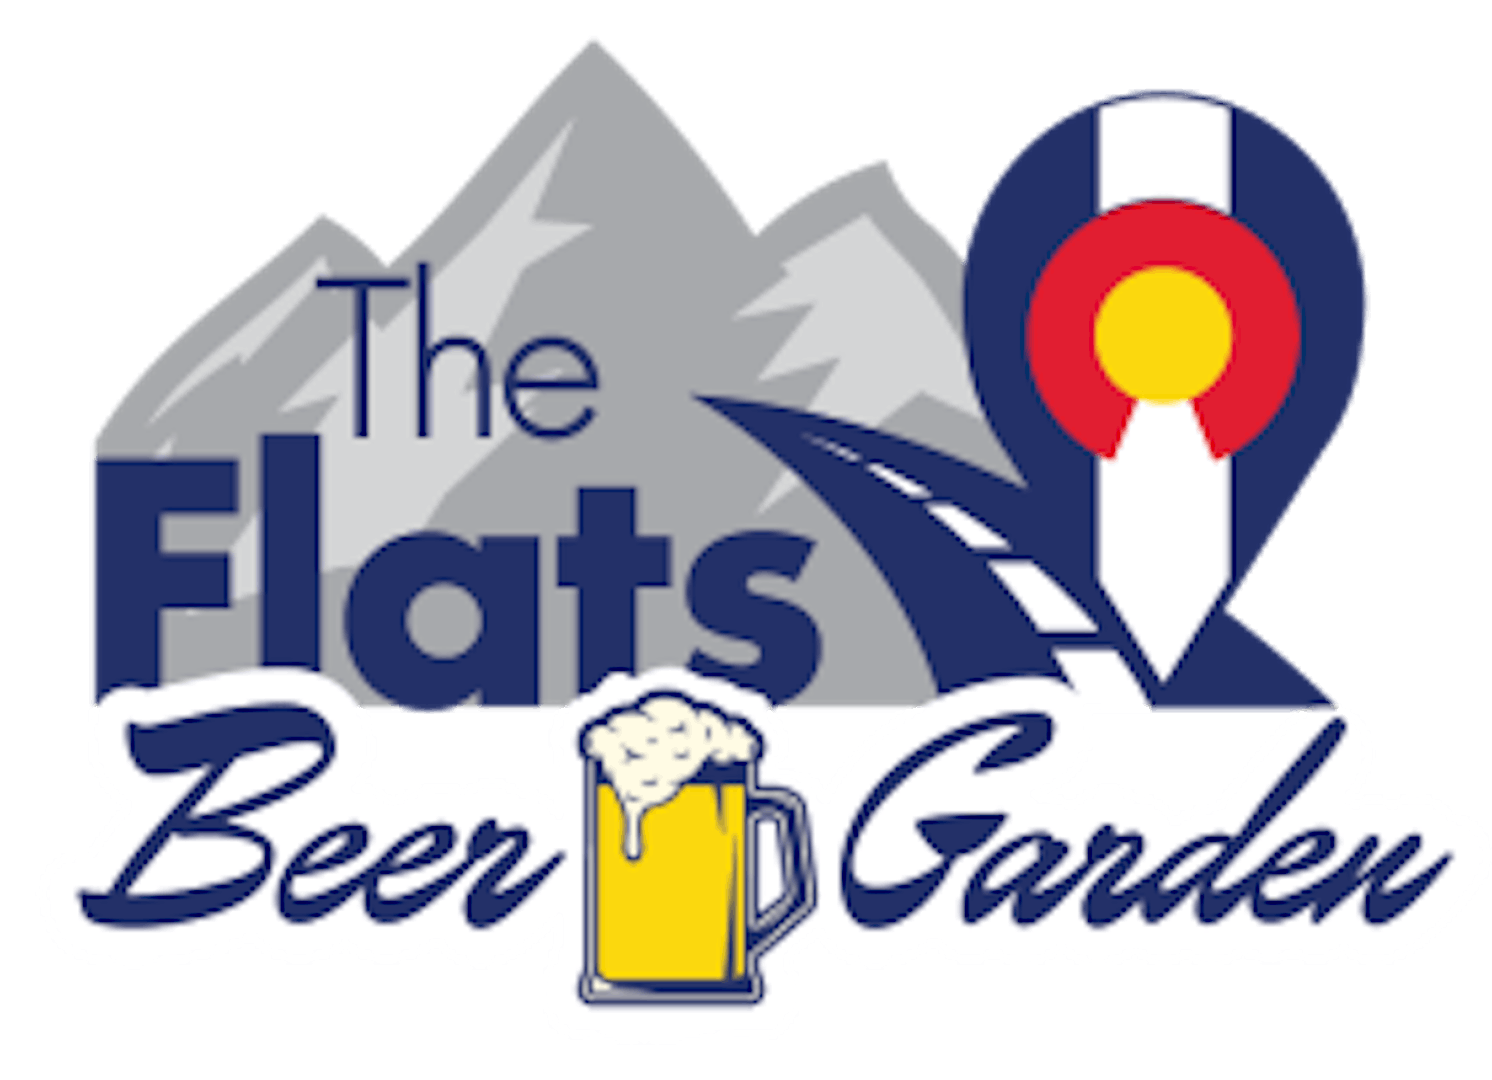 The Flats Beer Garden